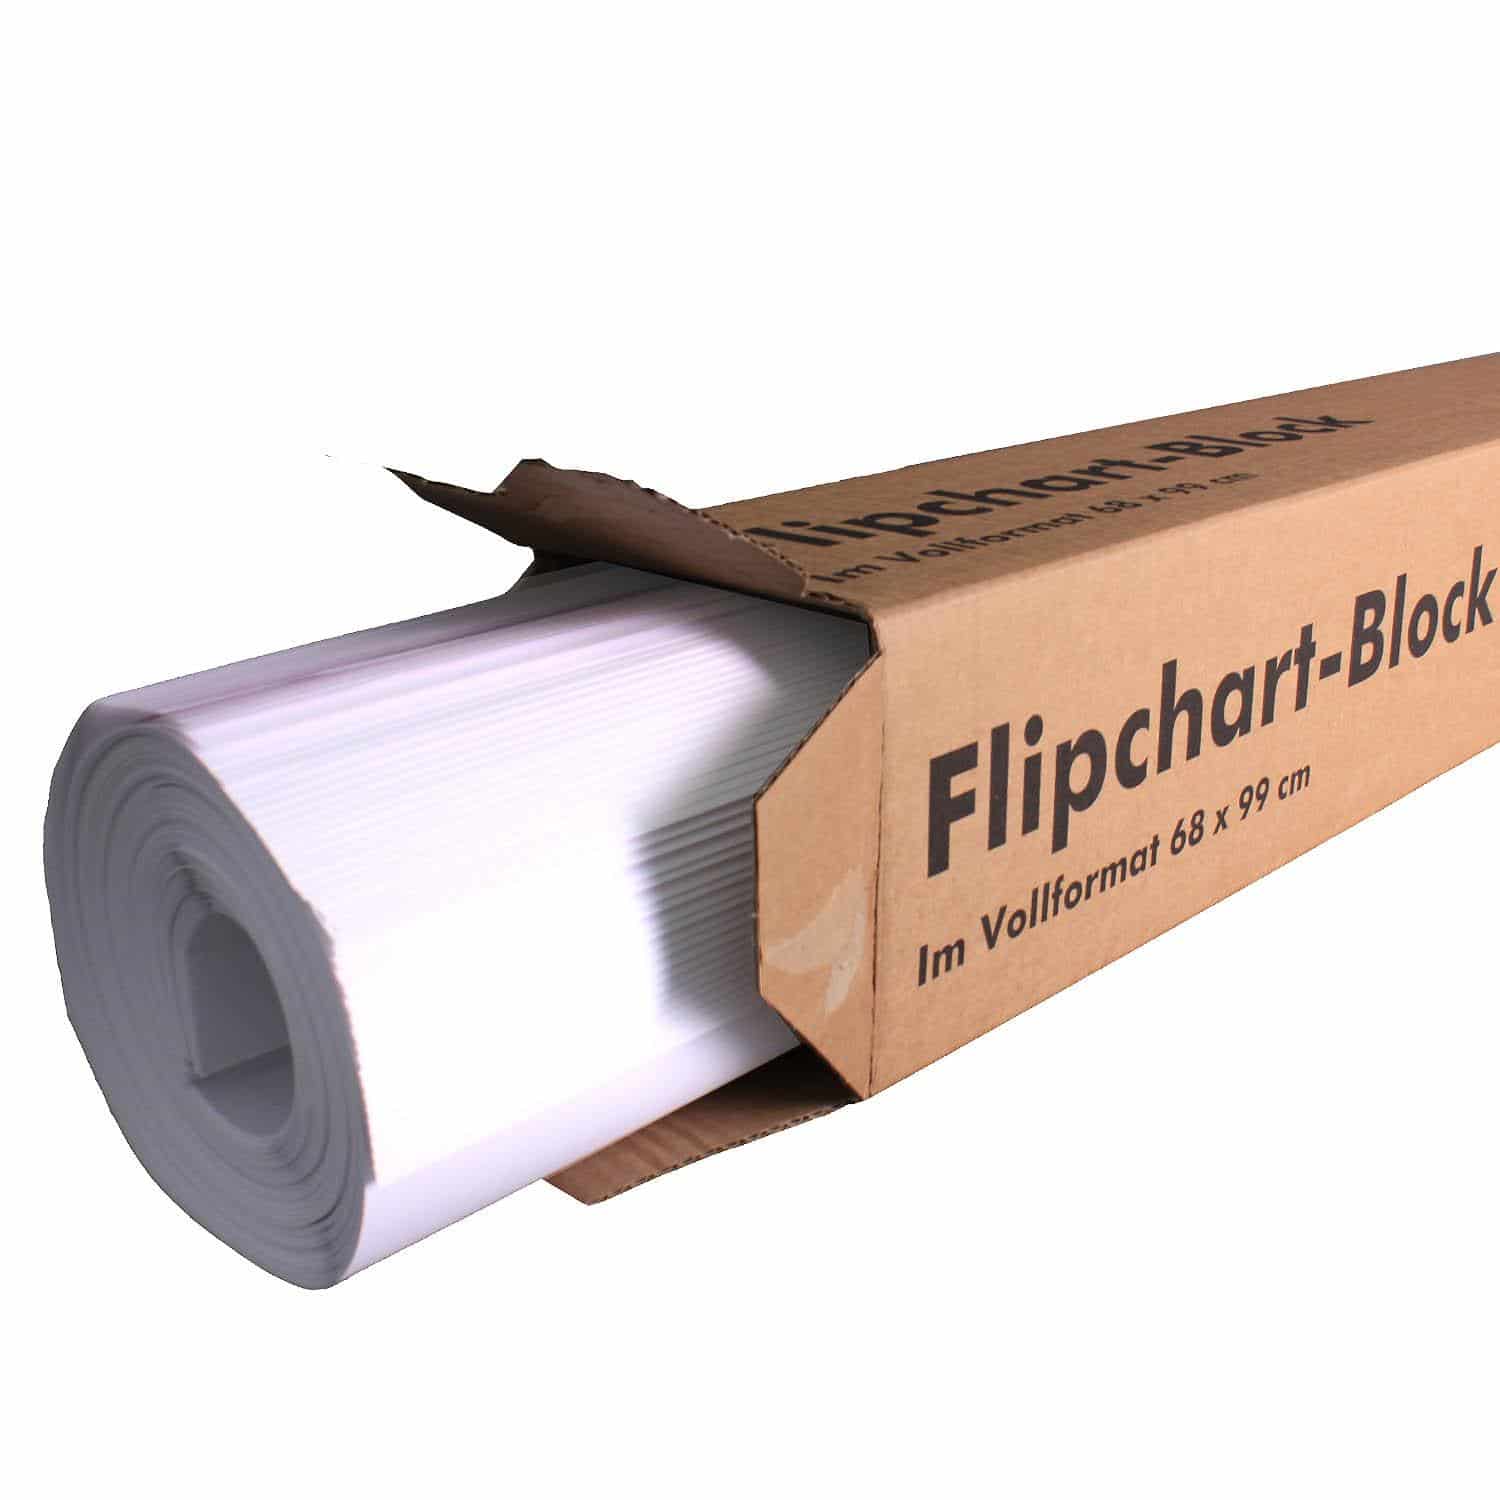 BuroMi universele flipover papier - 100 vellen (5 pak a 20 vellen)